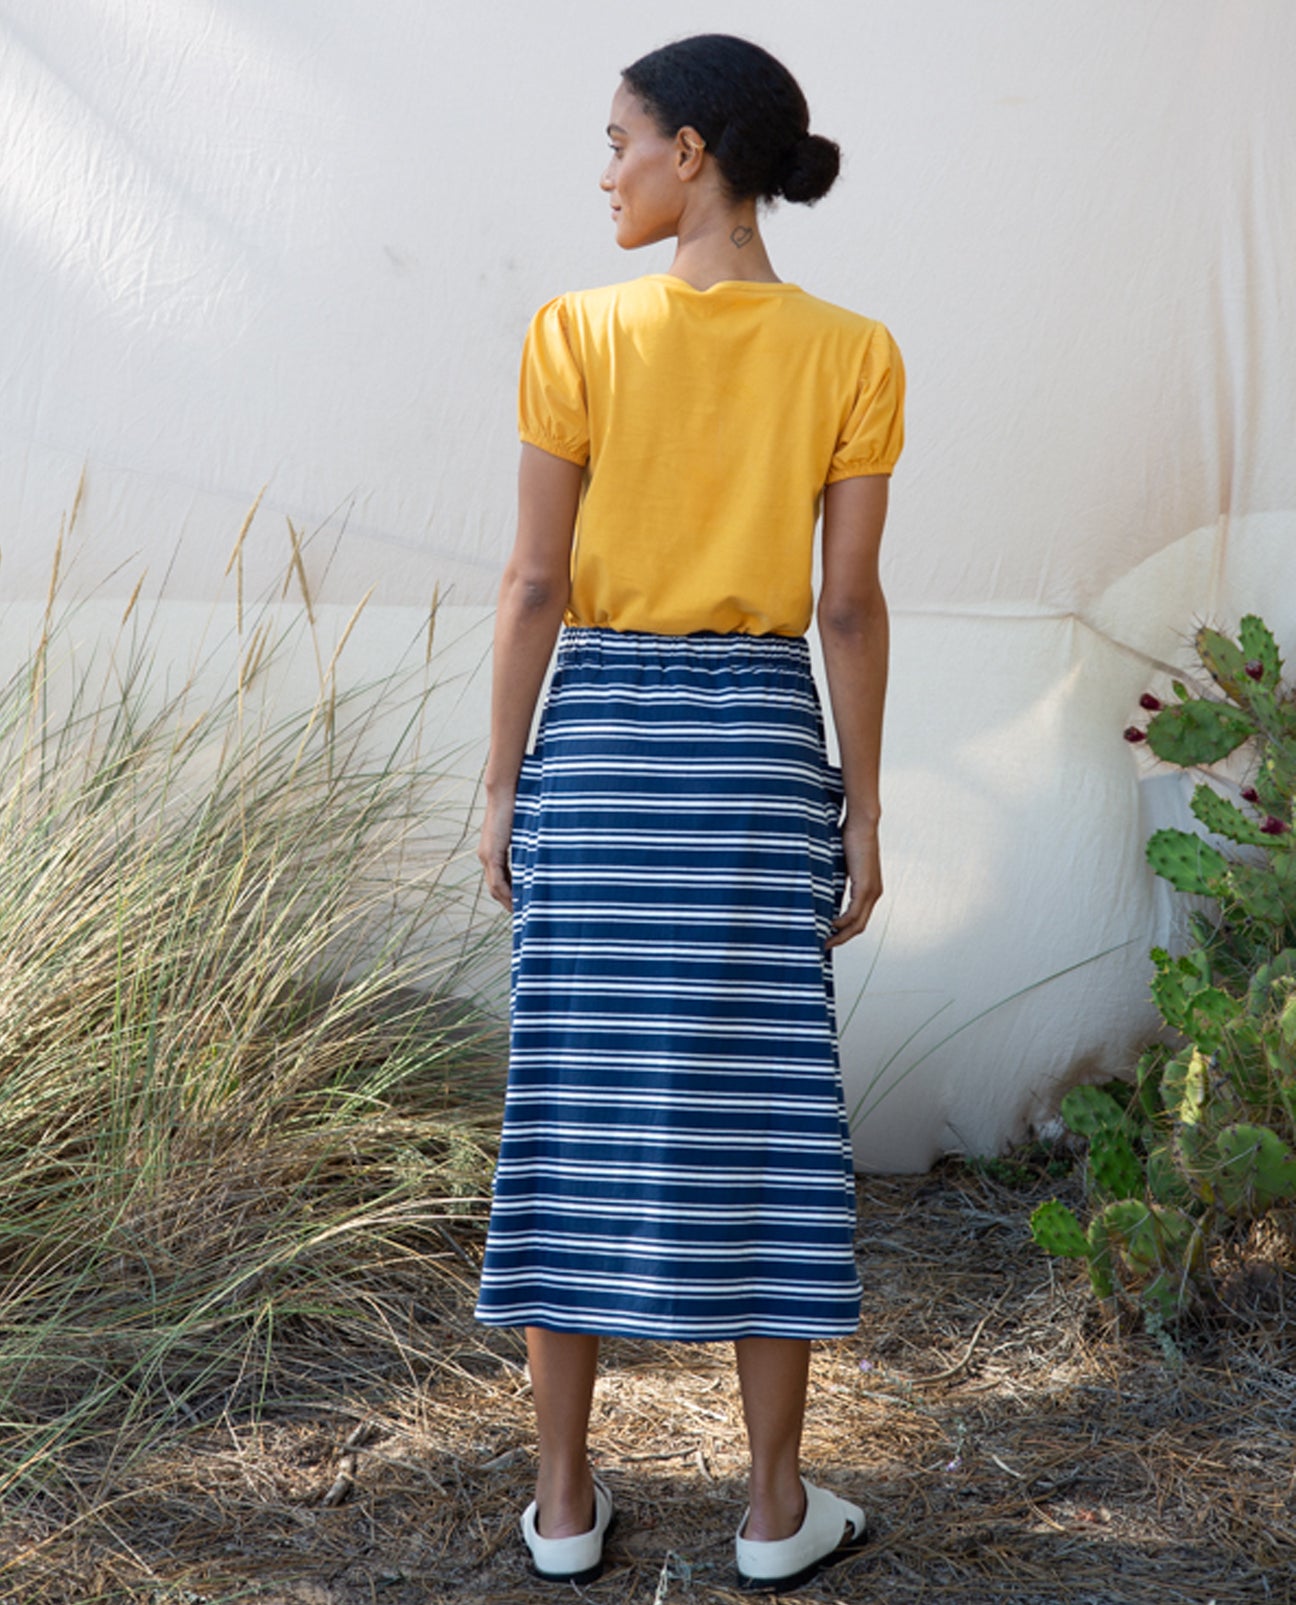 Allegra-Sue Organic Cotton Skirt In Indigo & White Stripe